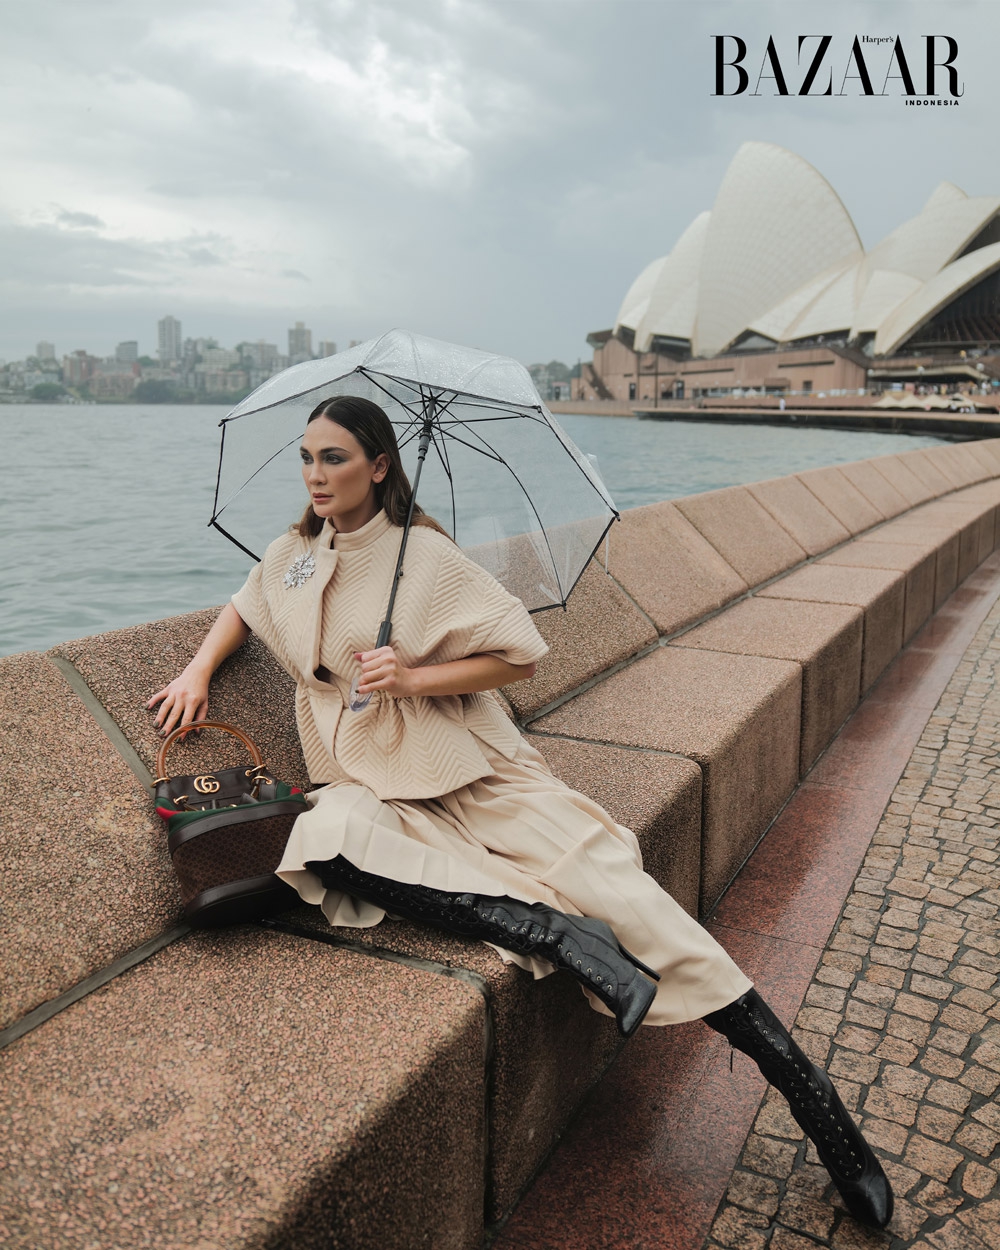 Luna Maya Tampil Glamor dalam Balutan Busana Gucci di Kota Sydney